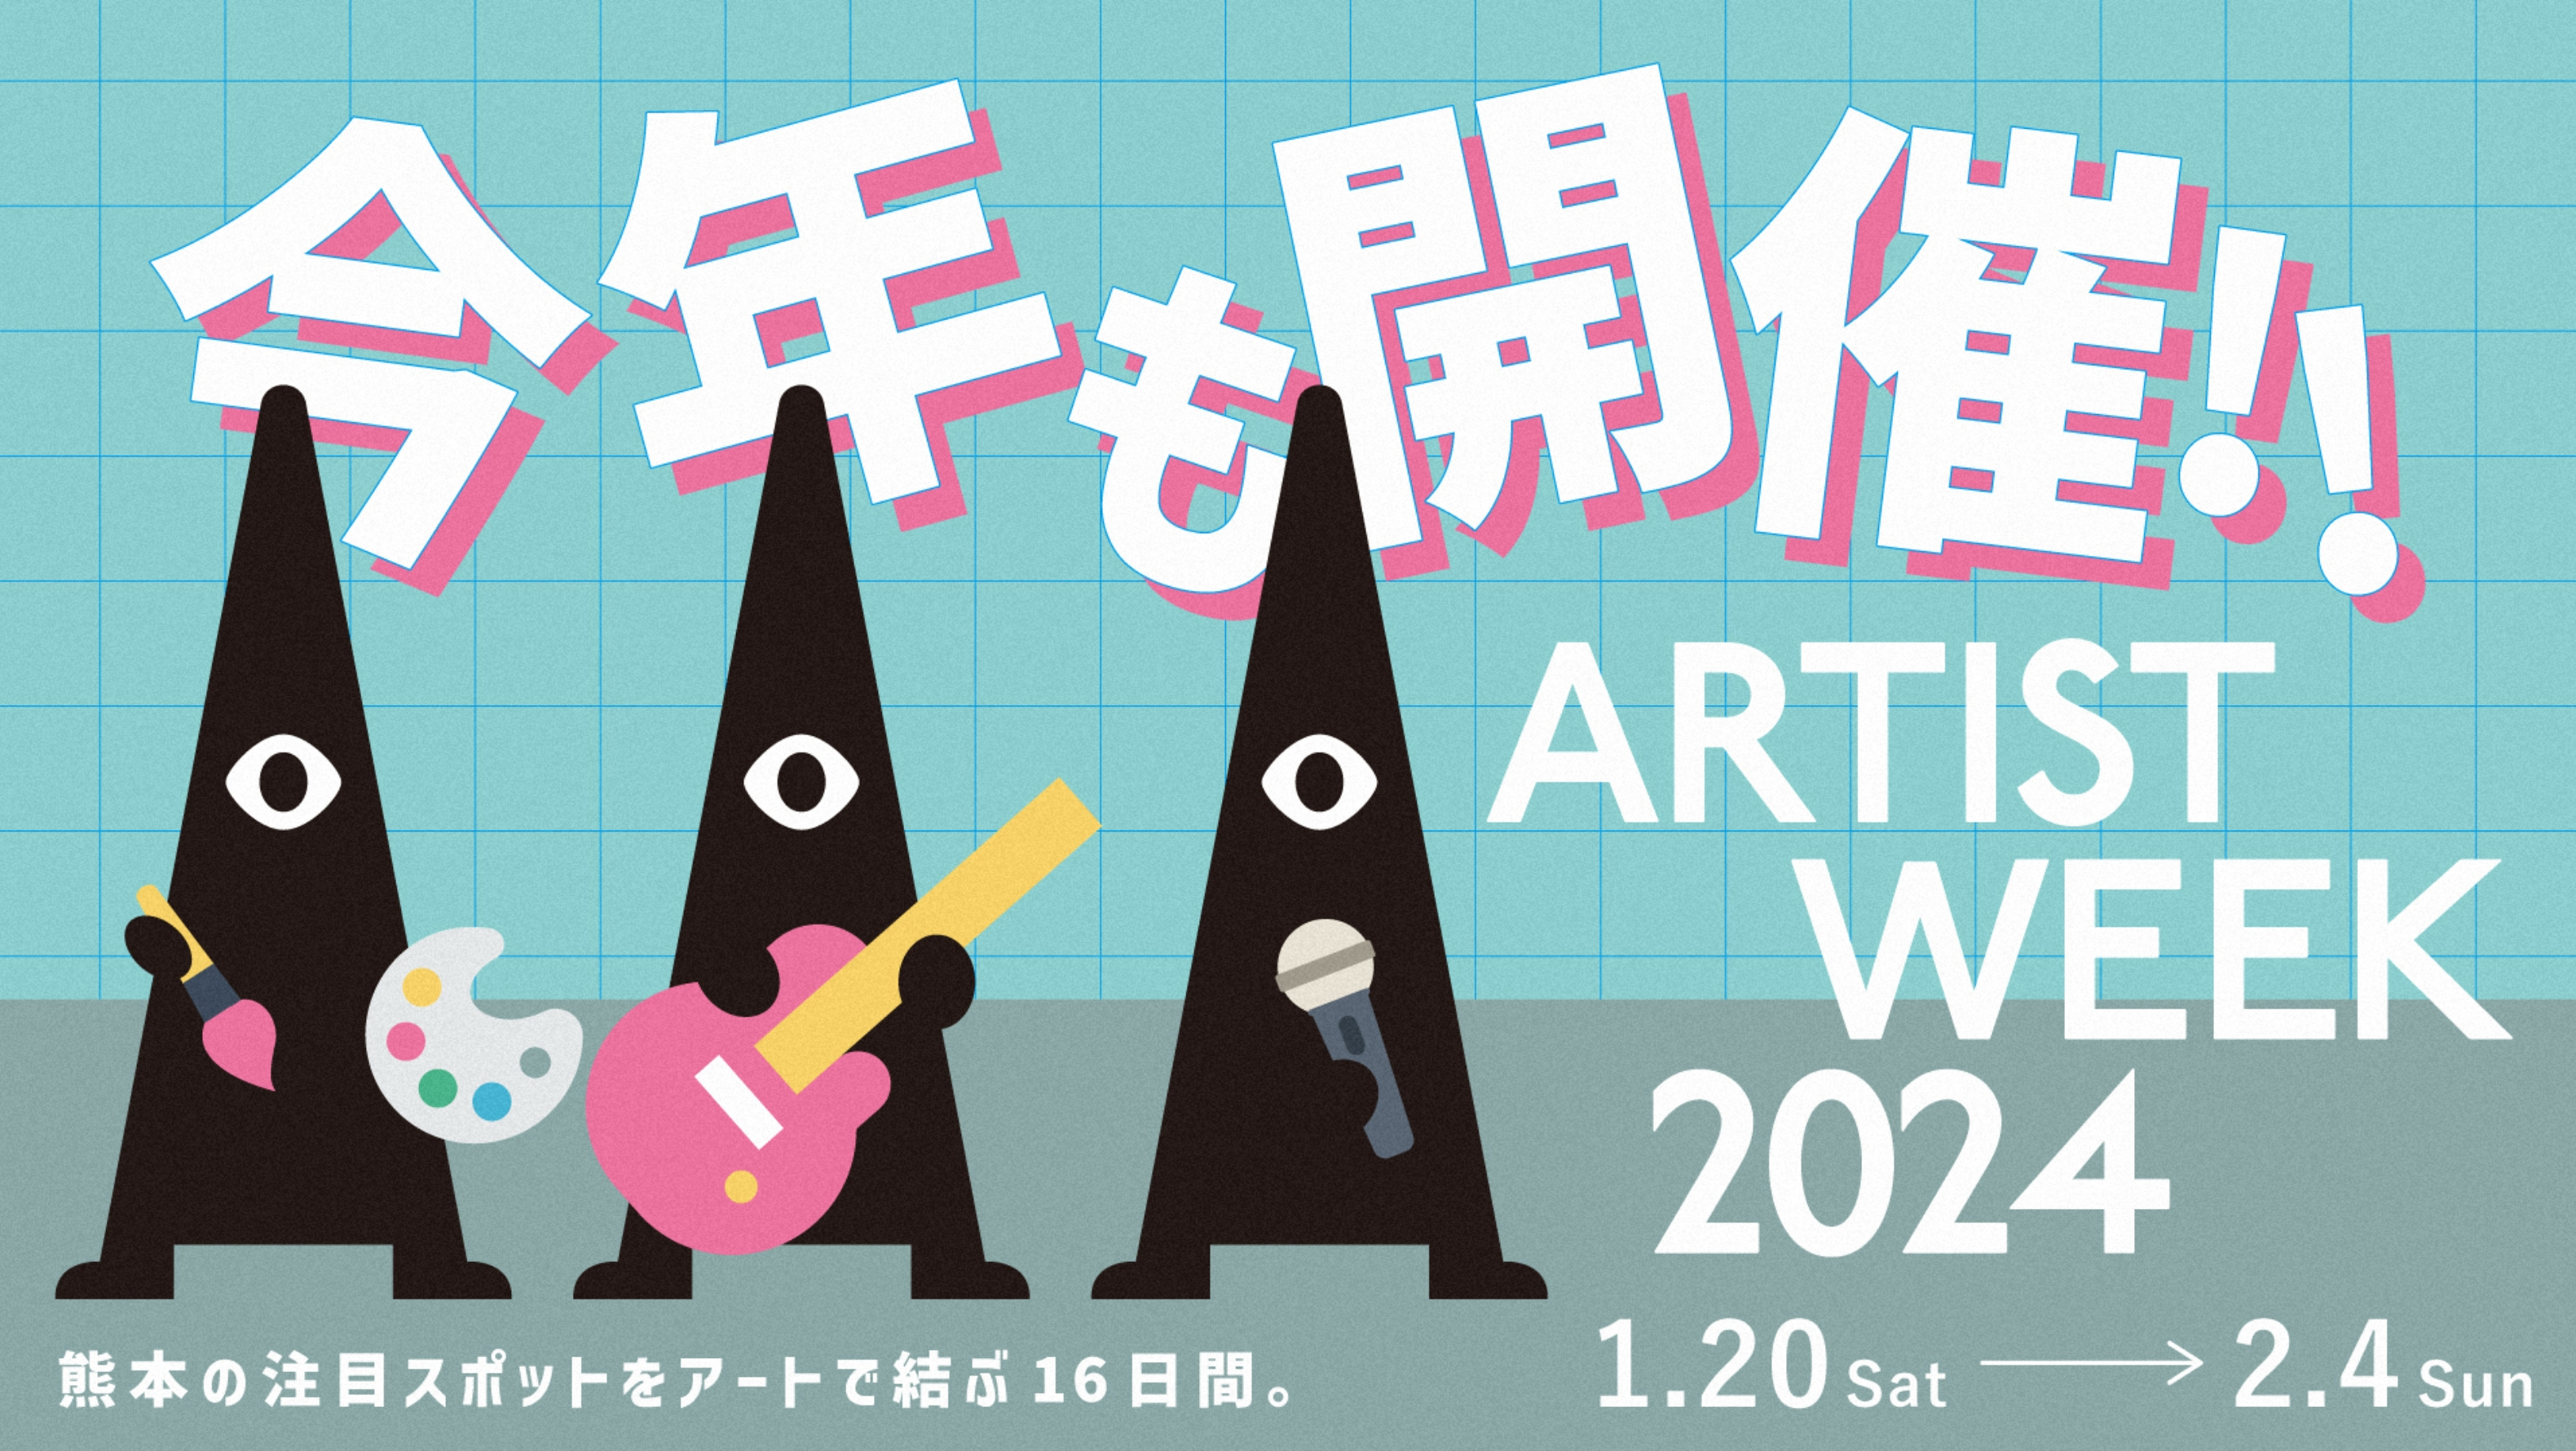 ARTIST WEEK 2024 今年も開催!!